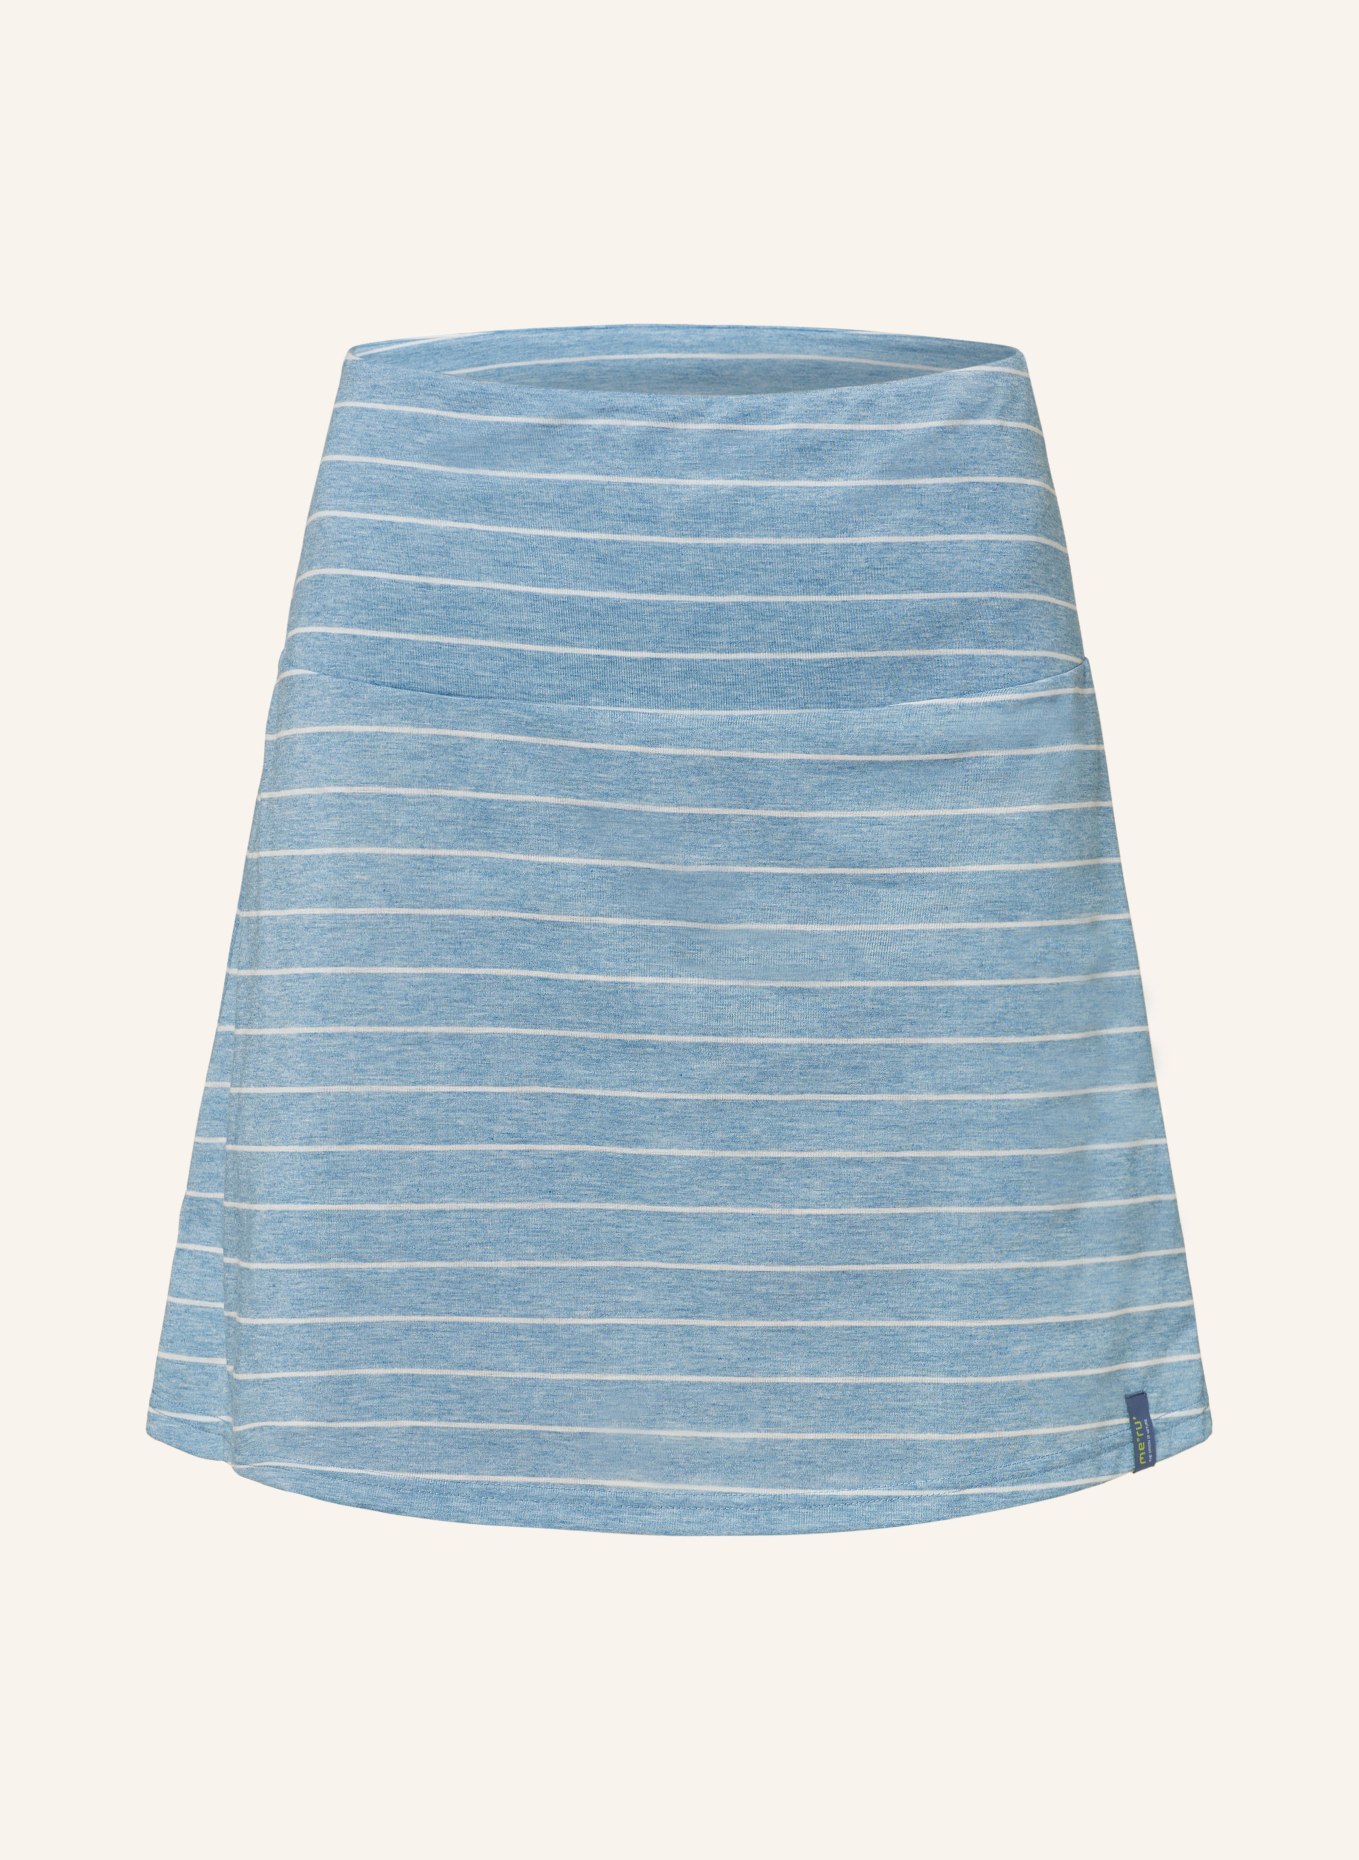 me°ru' Outdoor skirt WINDHOEK, Color: LIGHT BLUE/ BLUE (Image 1)